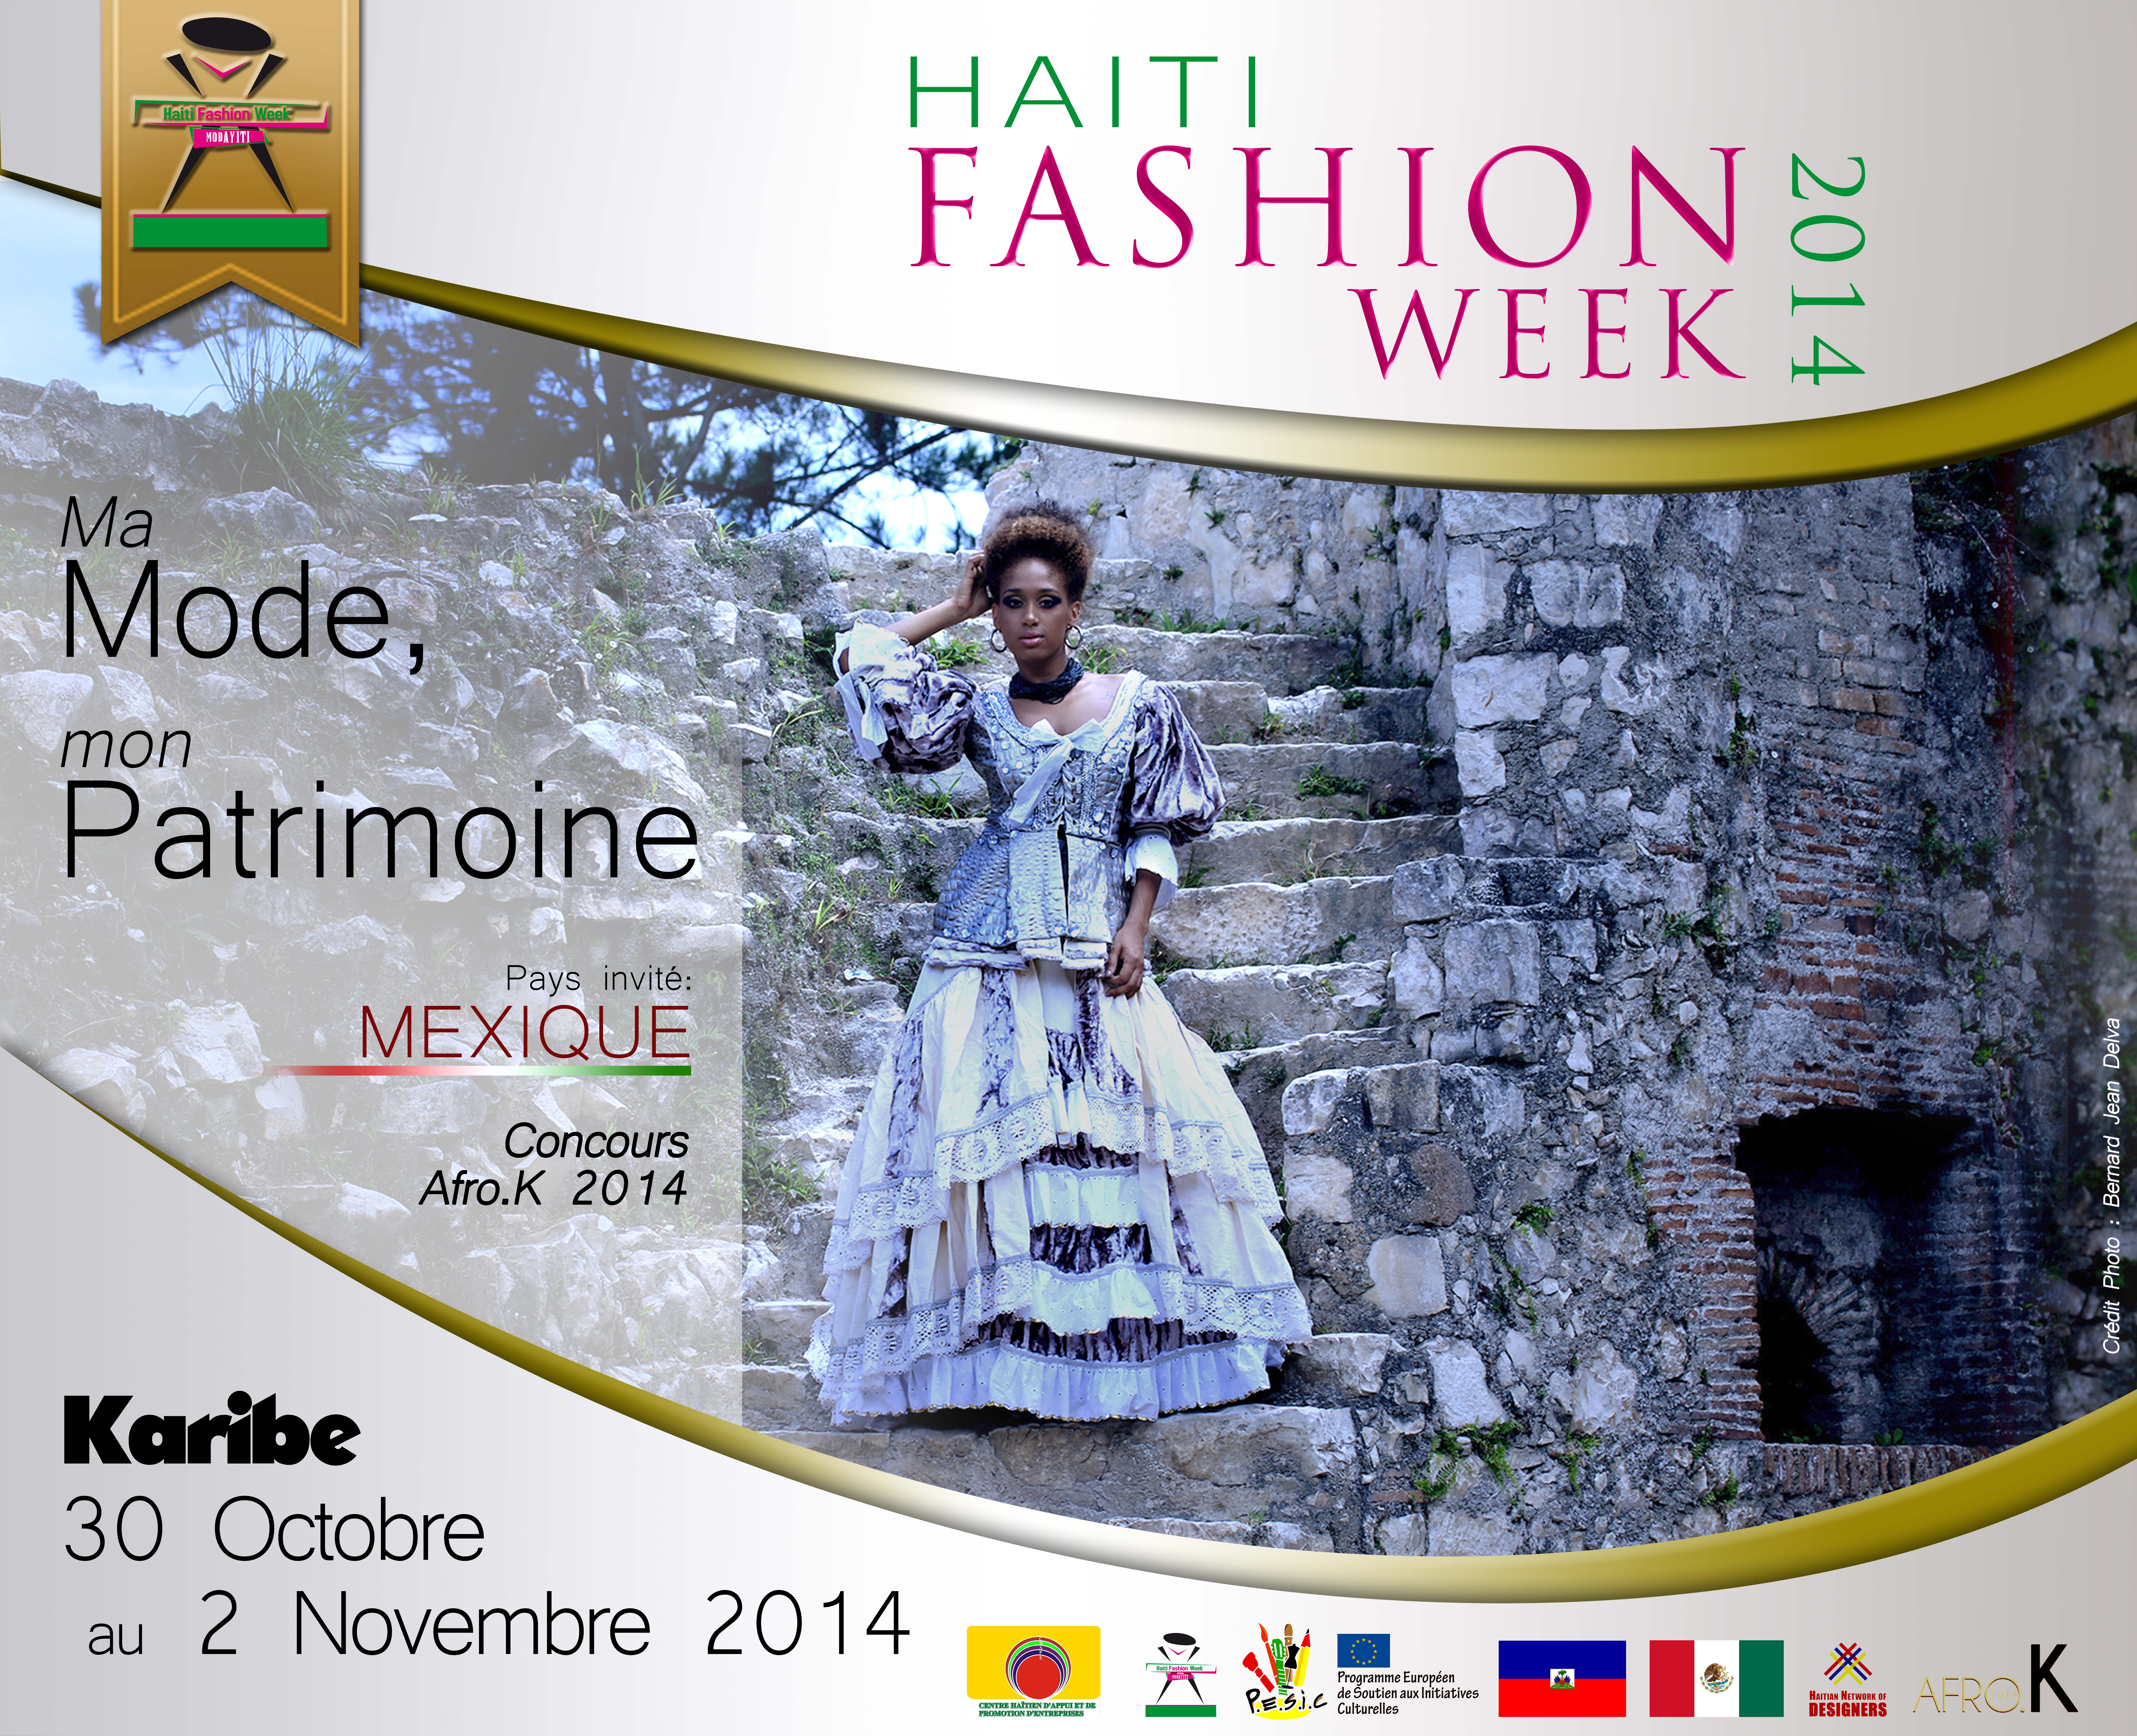 Haiti Fashion Week